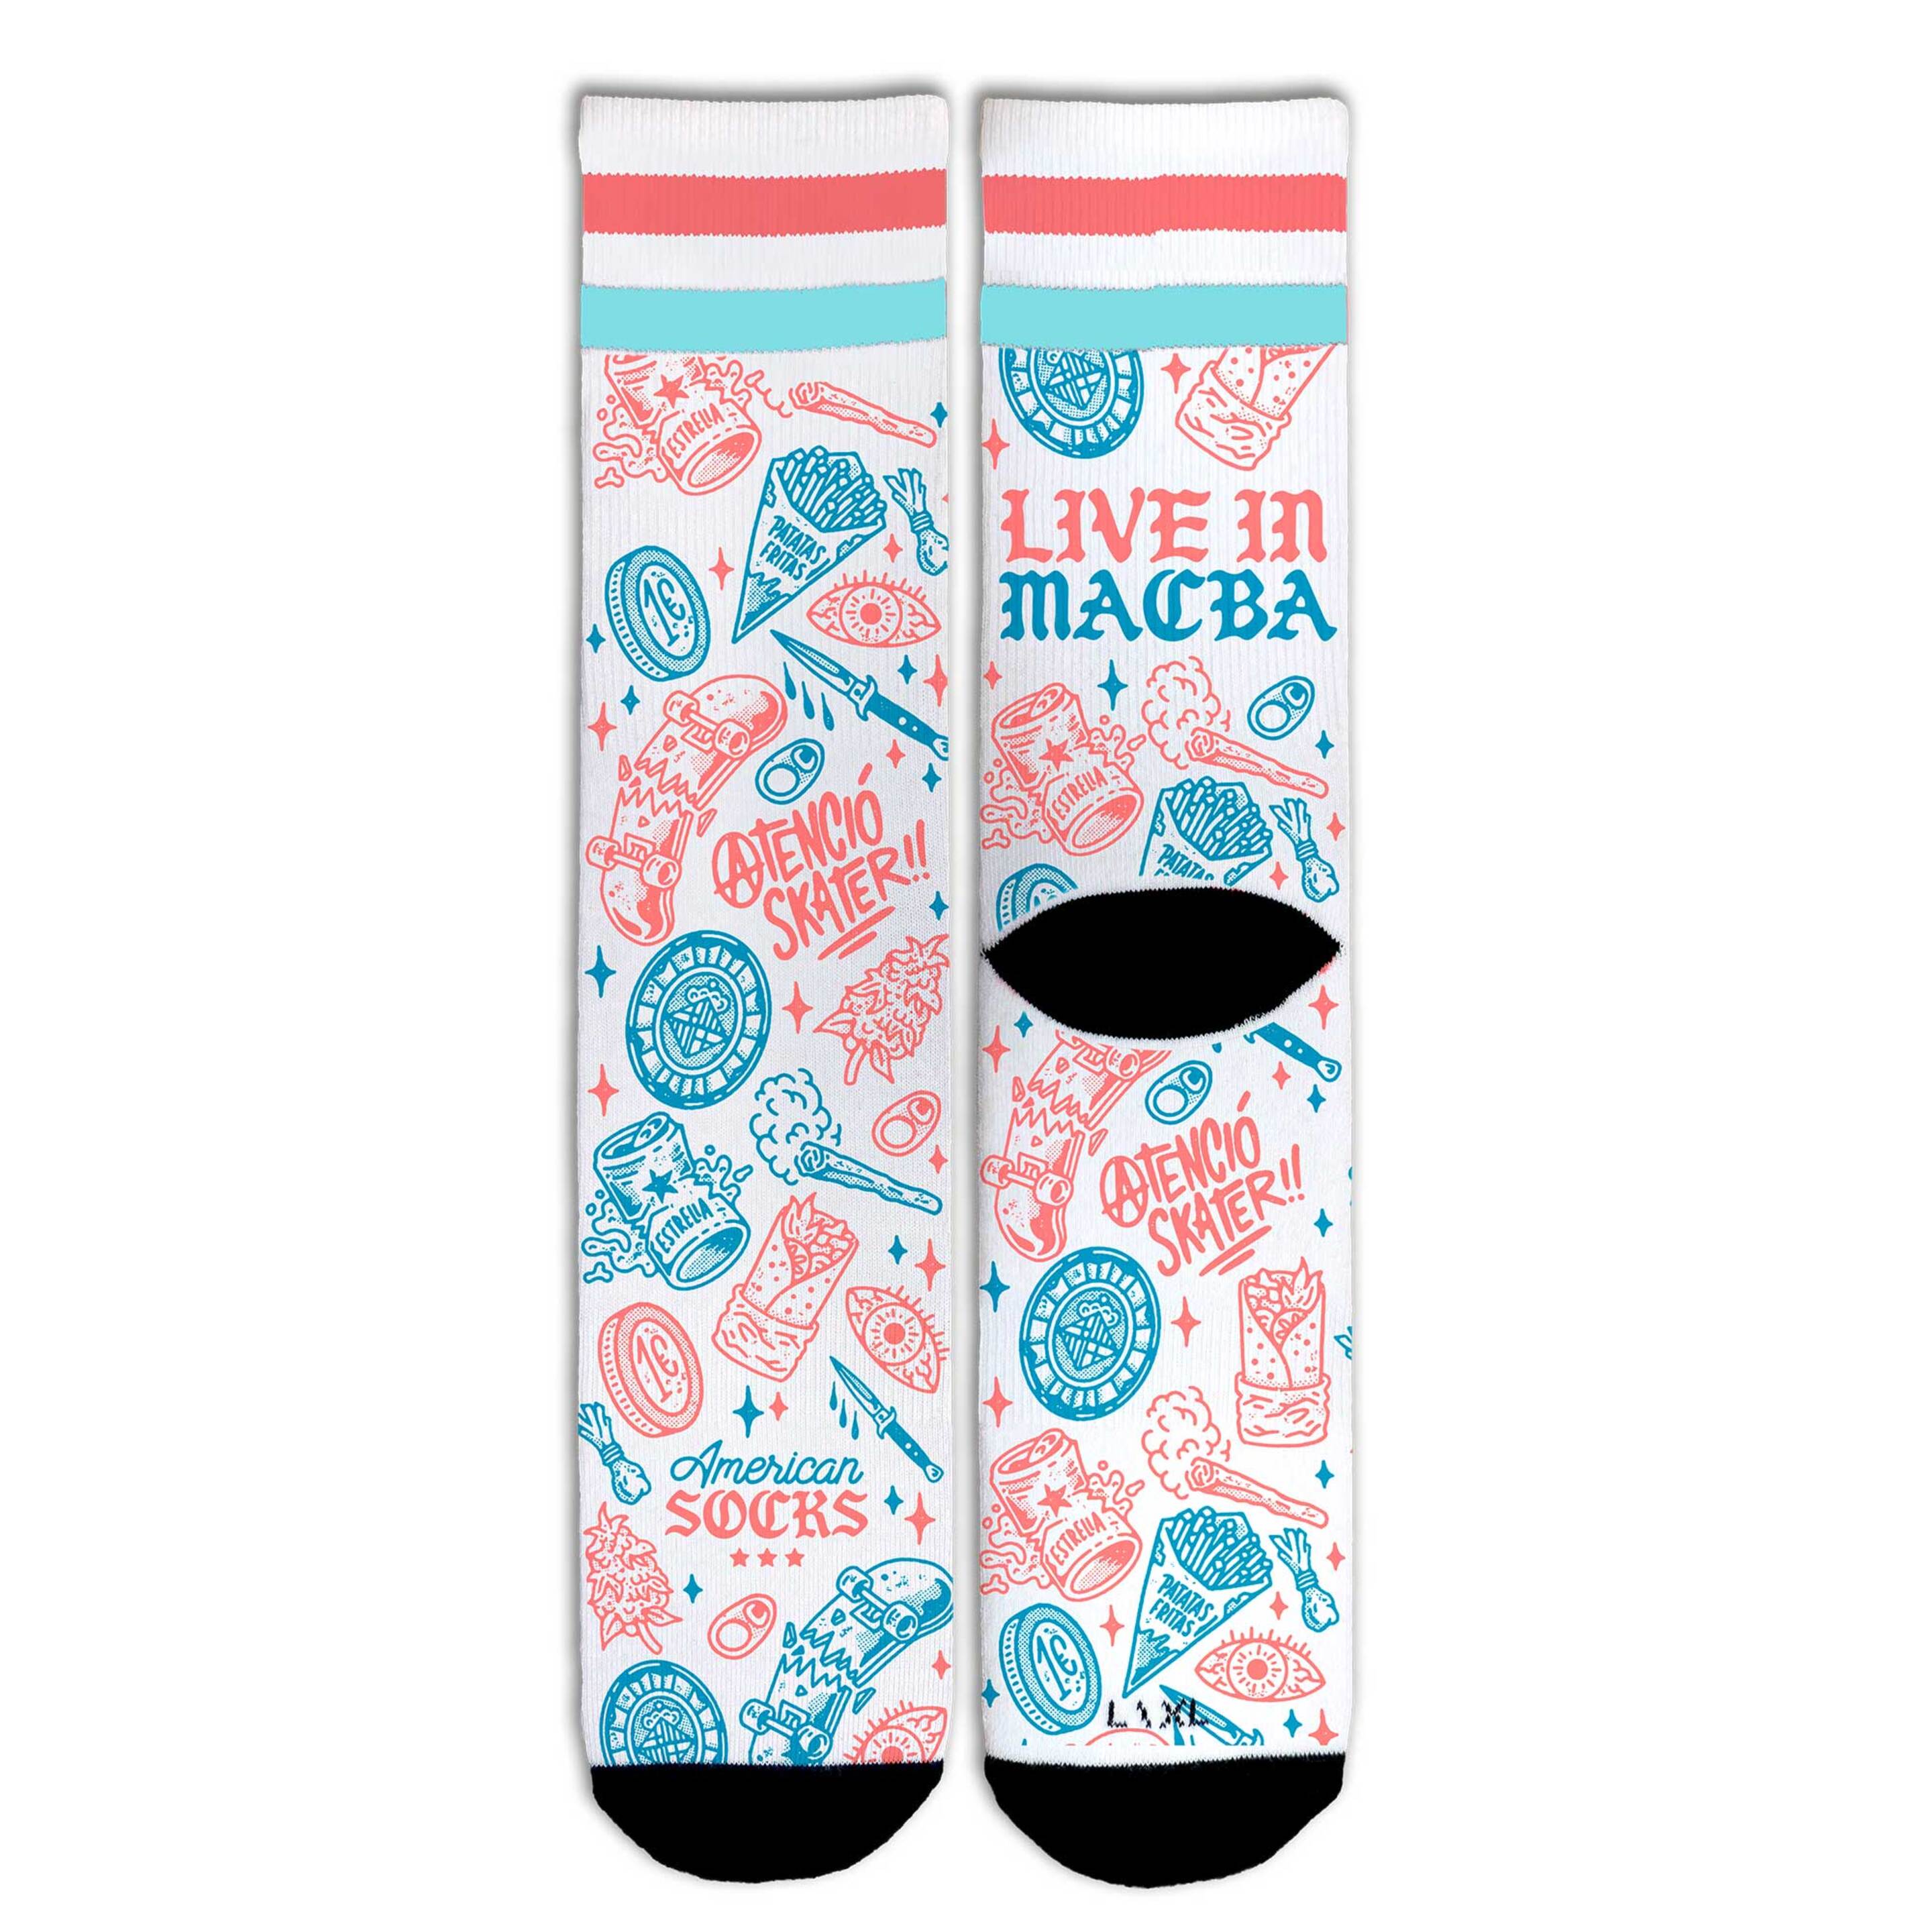 Meias American Socks Macba Mid High - blanco - 